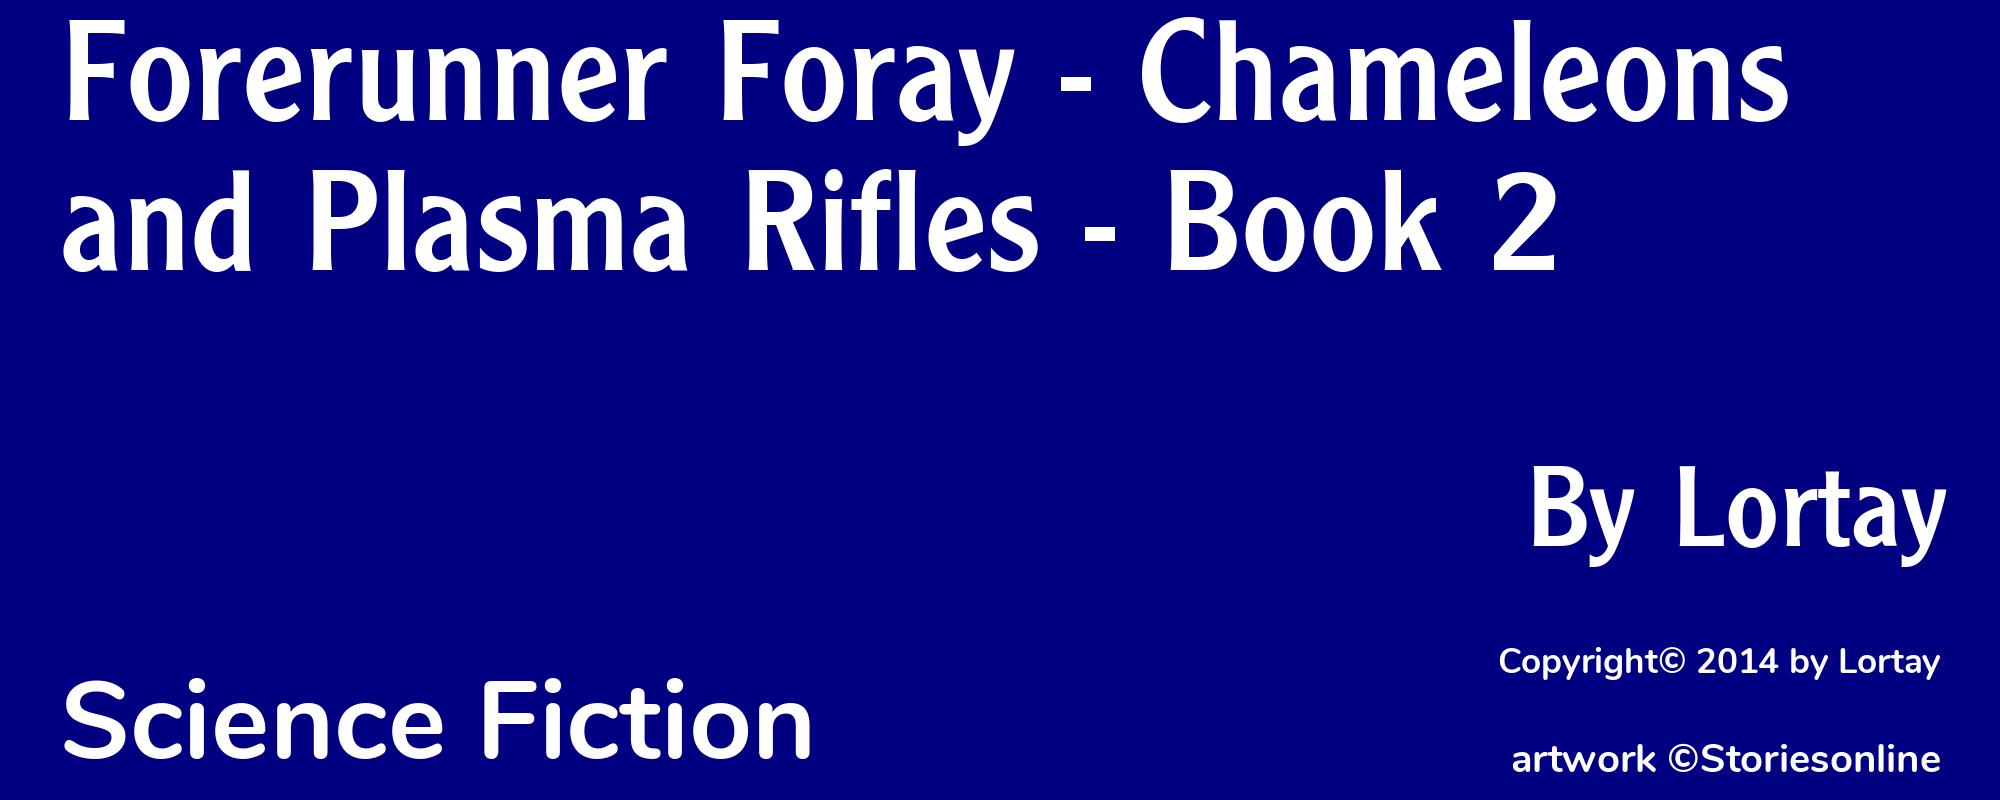 Forerunner Foray - Chameleons and Plasma Rifles - Book 2 - Cover